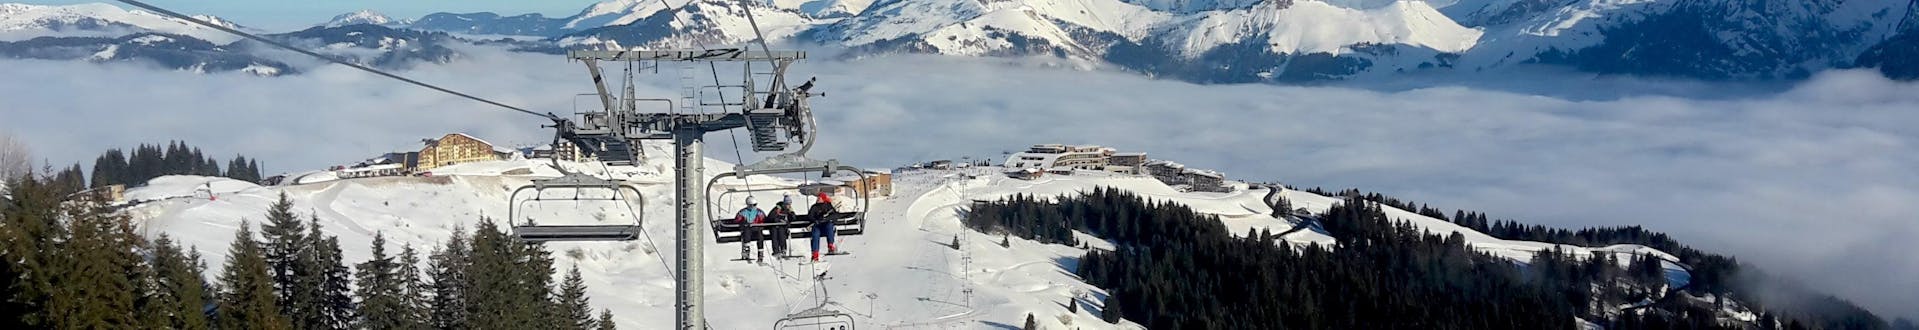 Un télésiège à Samoëns transporte un groupe de skieurs et leur moniteur de ski d'une des écoles de ski locales jusqu'au sommet de la montagne où ils commenceront leurs cours de ski.